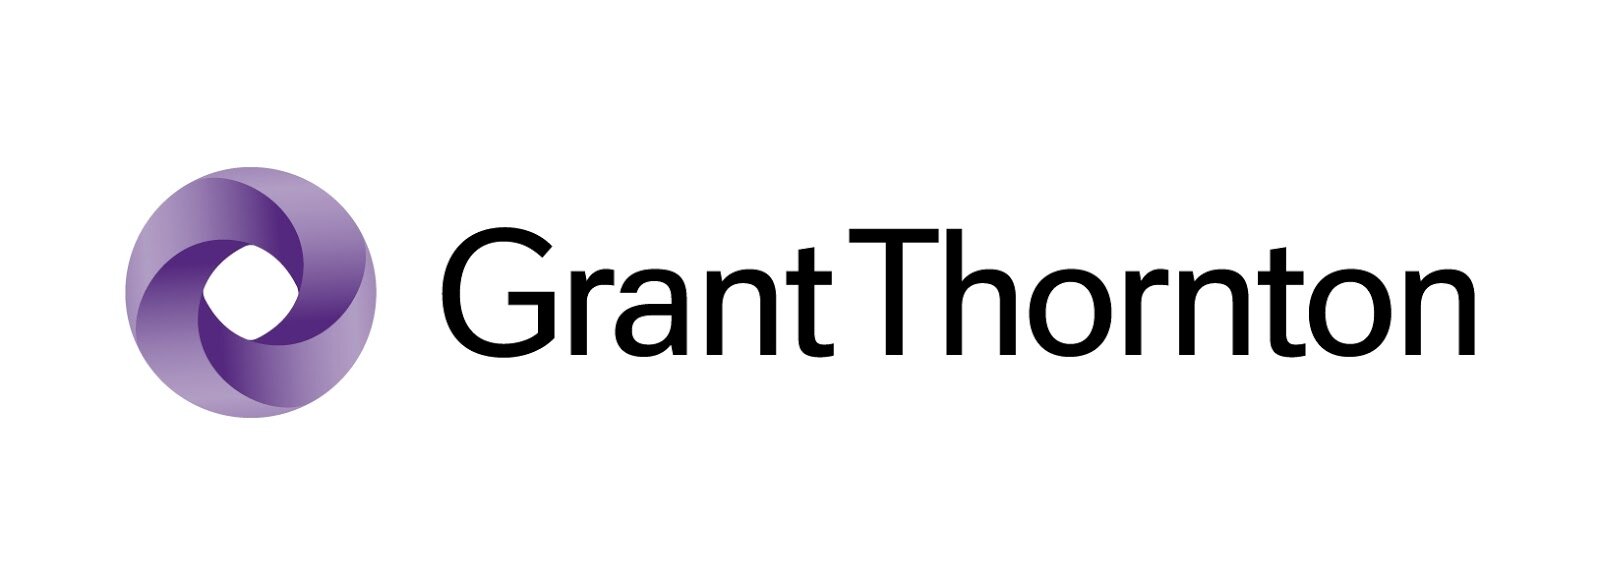 GrantThornton_logo9.jpg